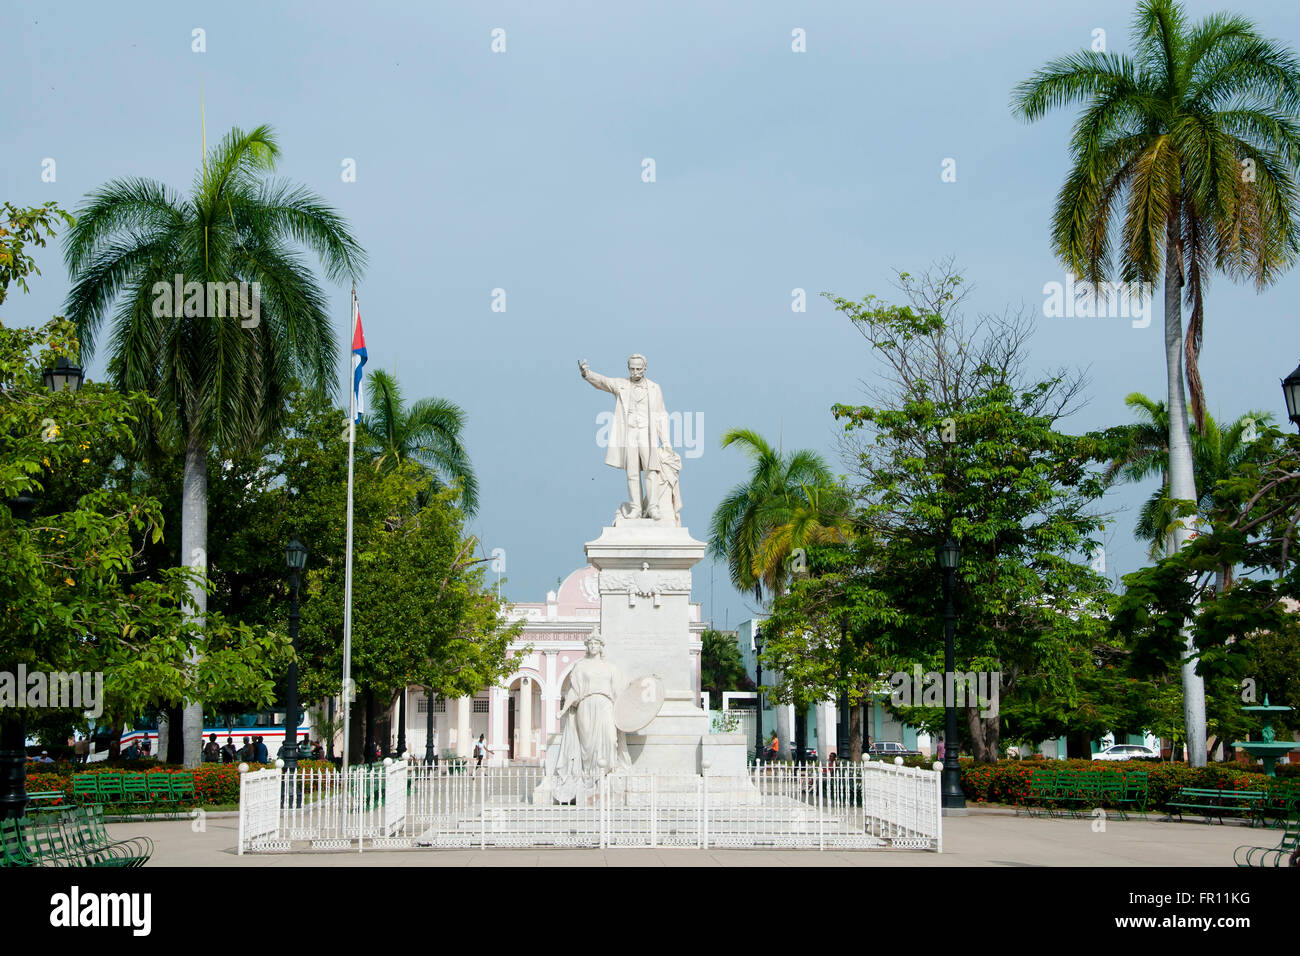 Jose Marti Statue - Cienfuegos - Cuba Banque D'Images